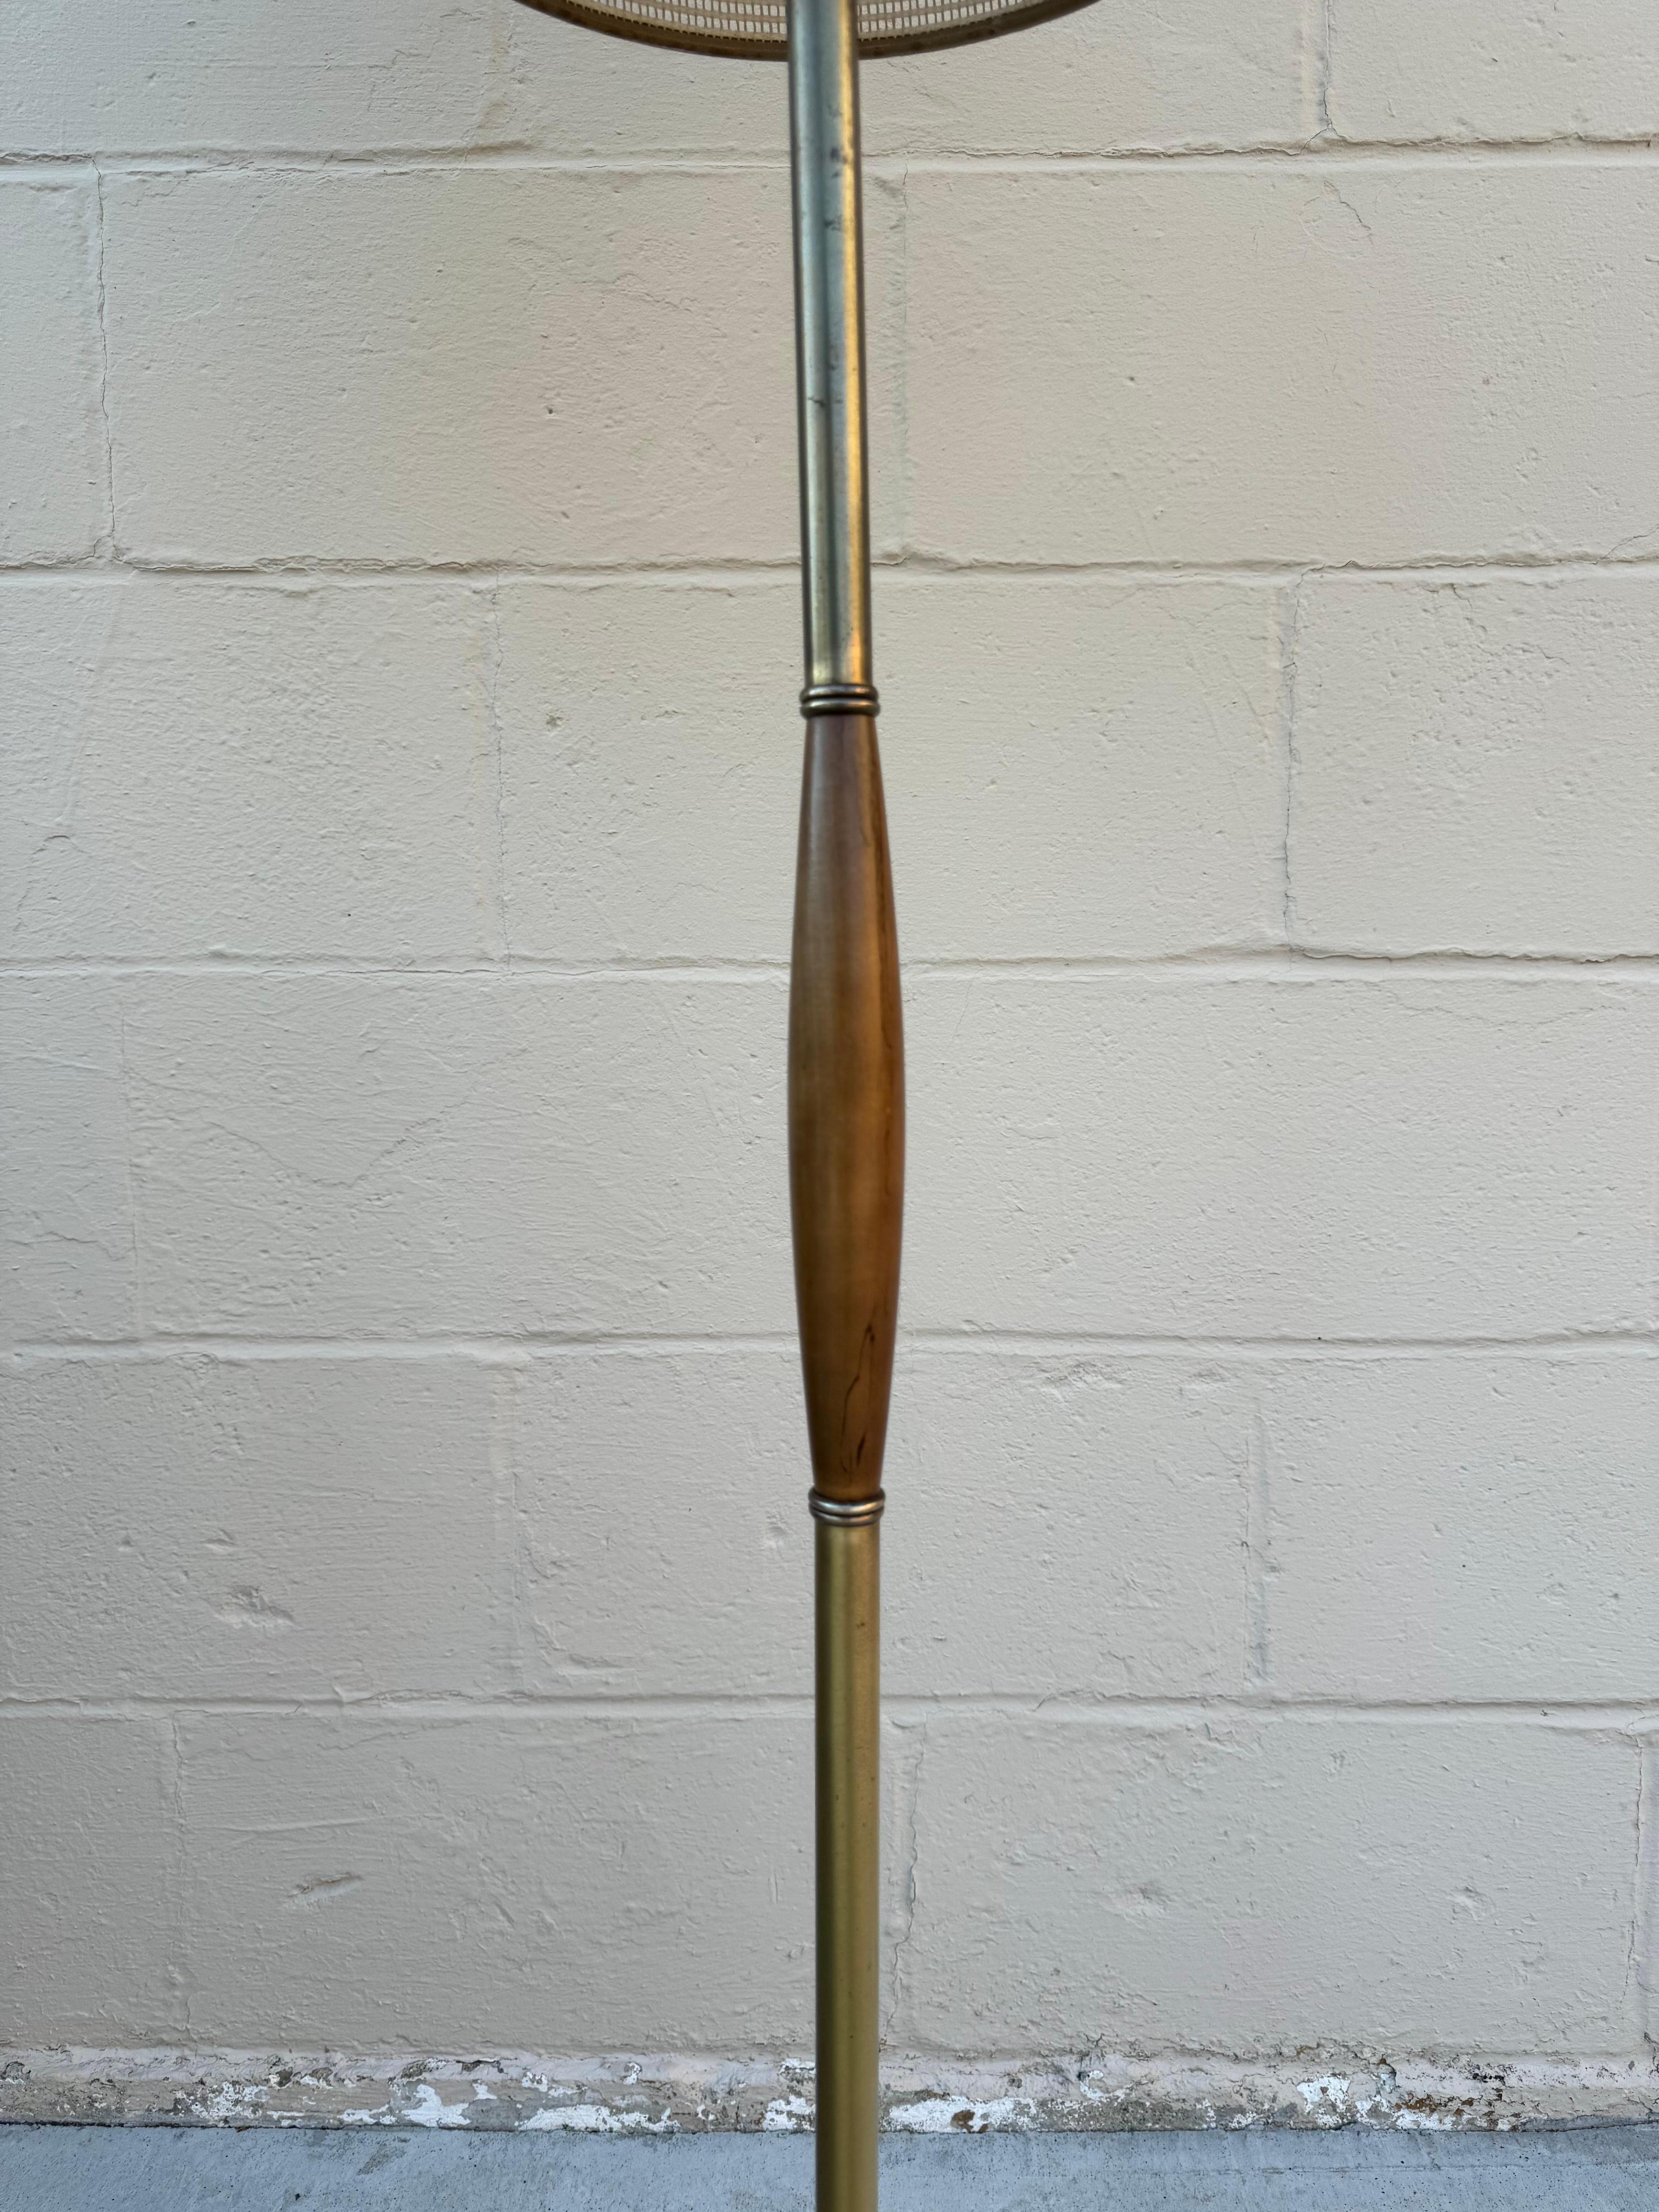 Nous proposons à la vente un magnifique lampadaire en laiton avec accent en bois de style moderne du milieu du siècle. Ce lampadaire est doté d'un magnifique abat-jour double en fibre de verre.

Ce lampadaire moderne du milieu du siècle est en